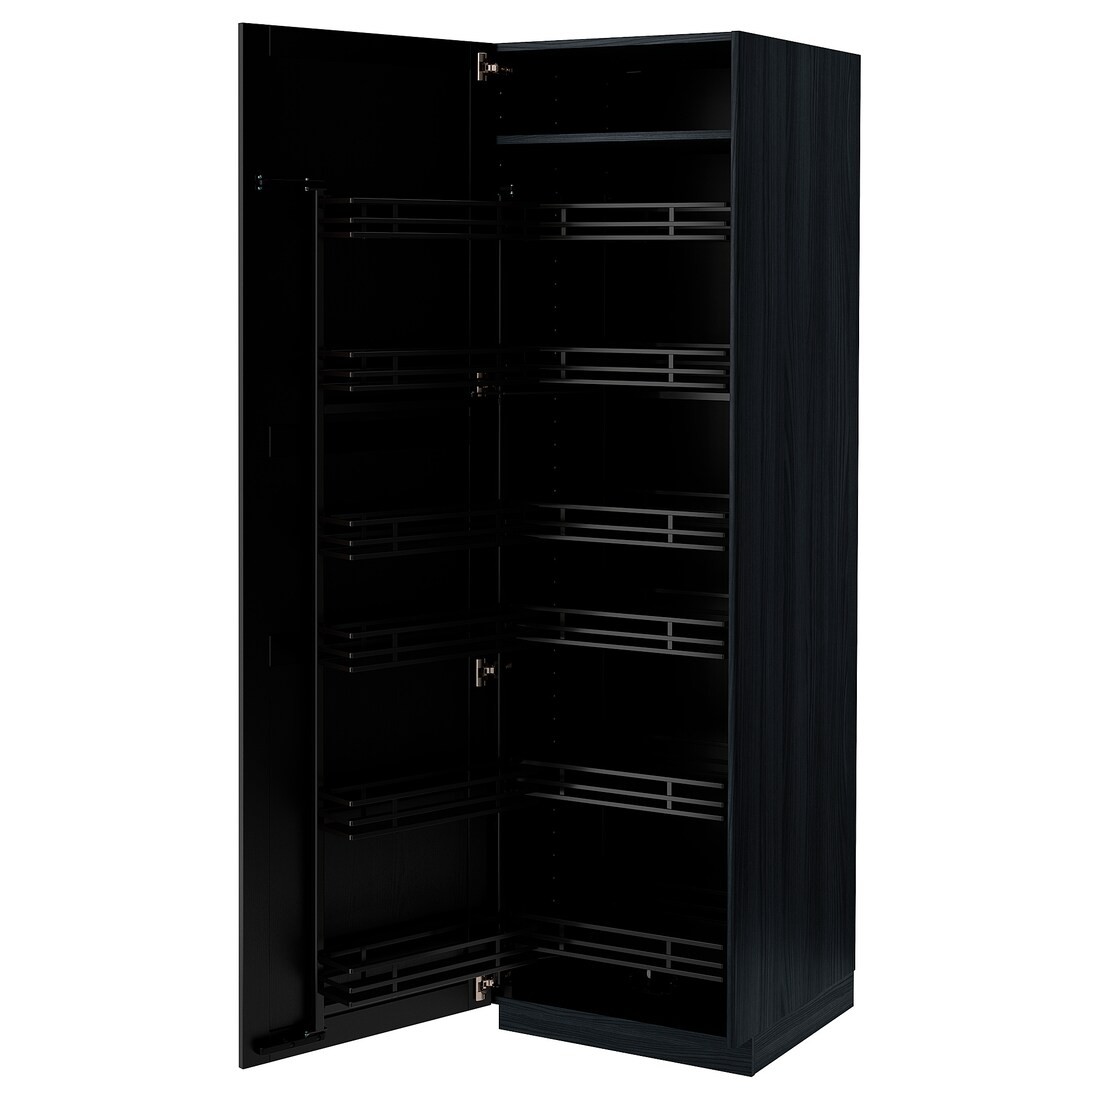 IKEA METOD МЕТОД Высокий шкаф с выдвижной кладовой, черный / Lerhyttan черная морилка, 60x60x200 см 69472120 694.721.20